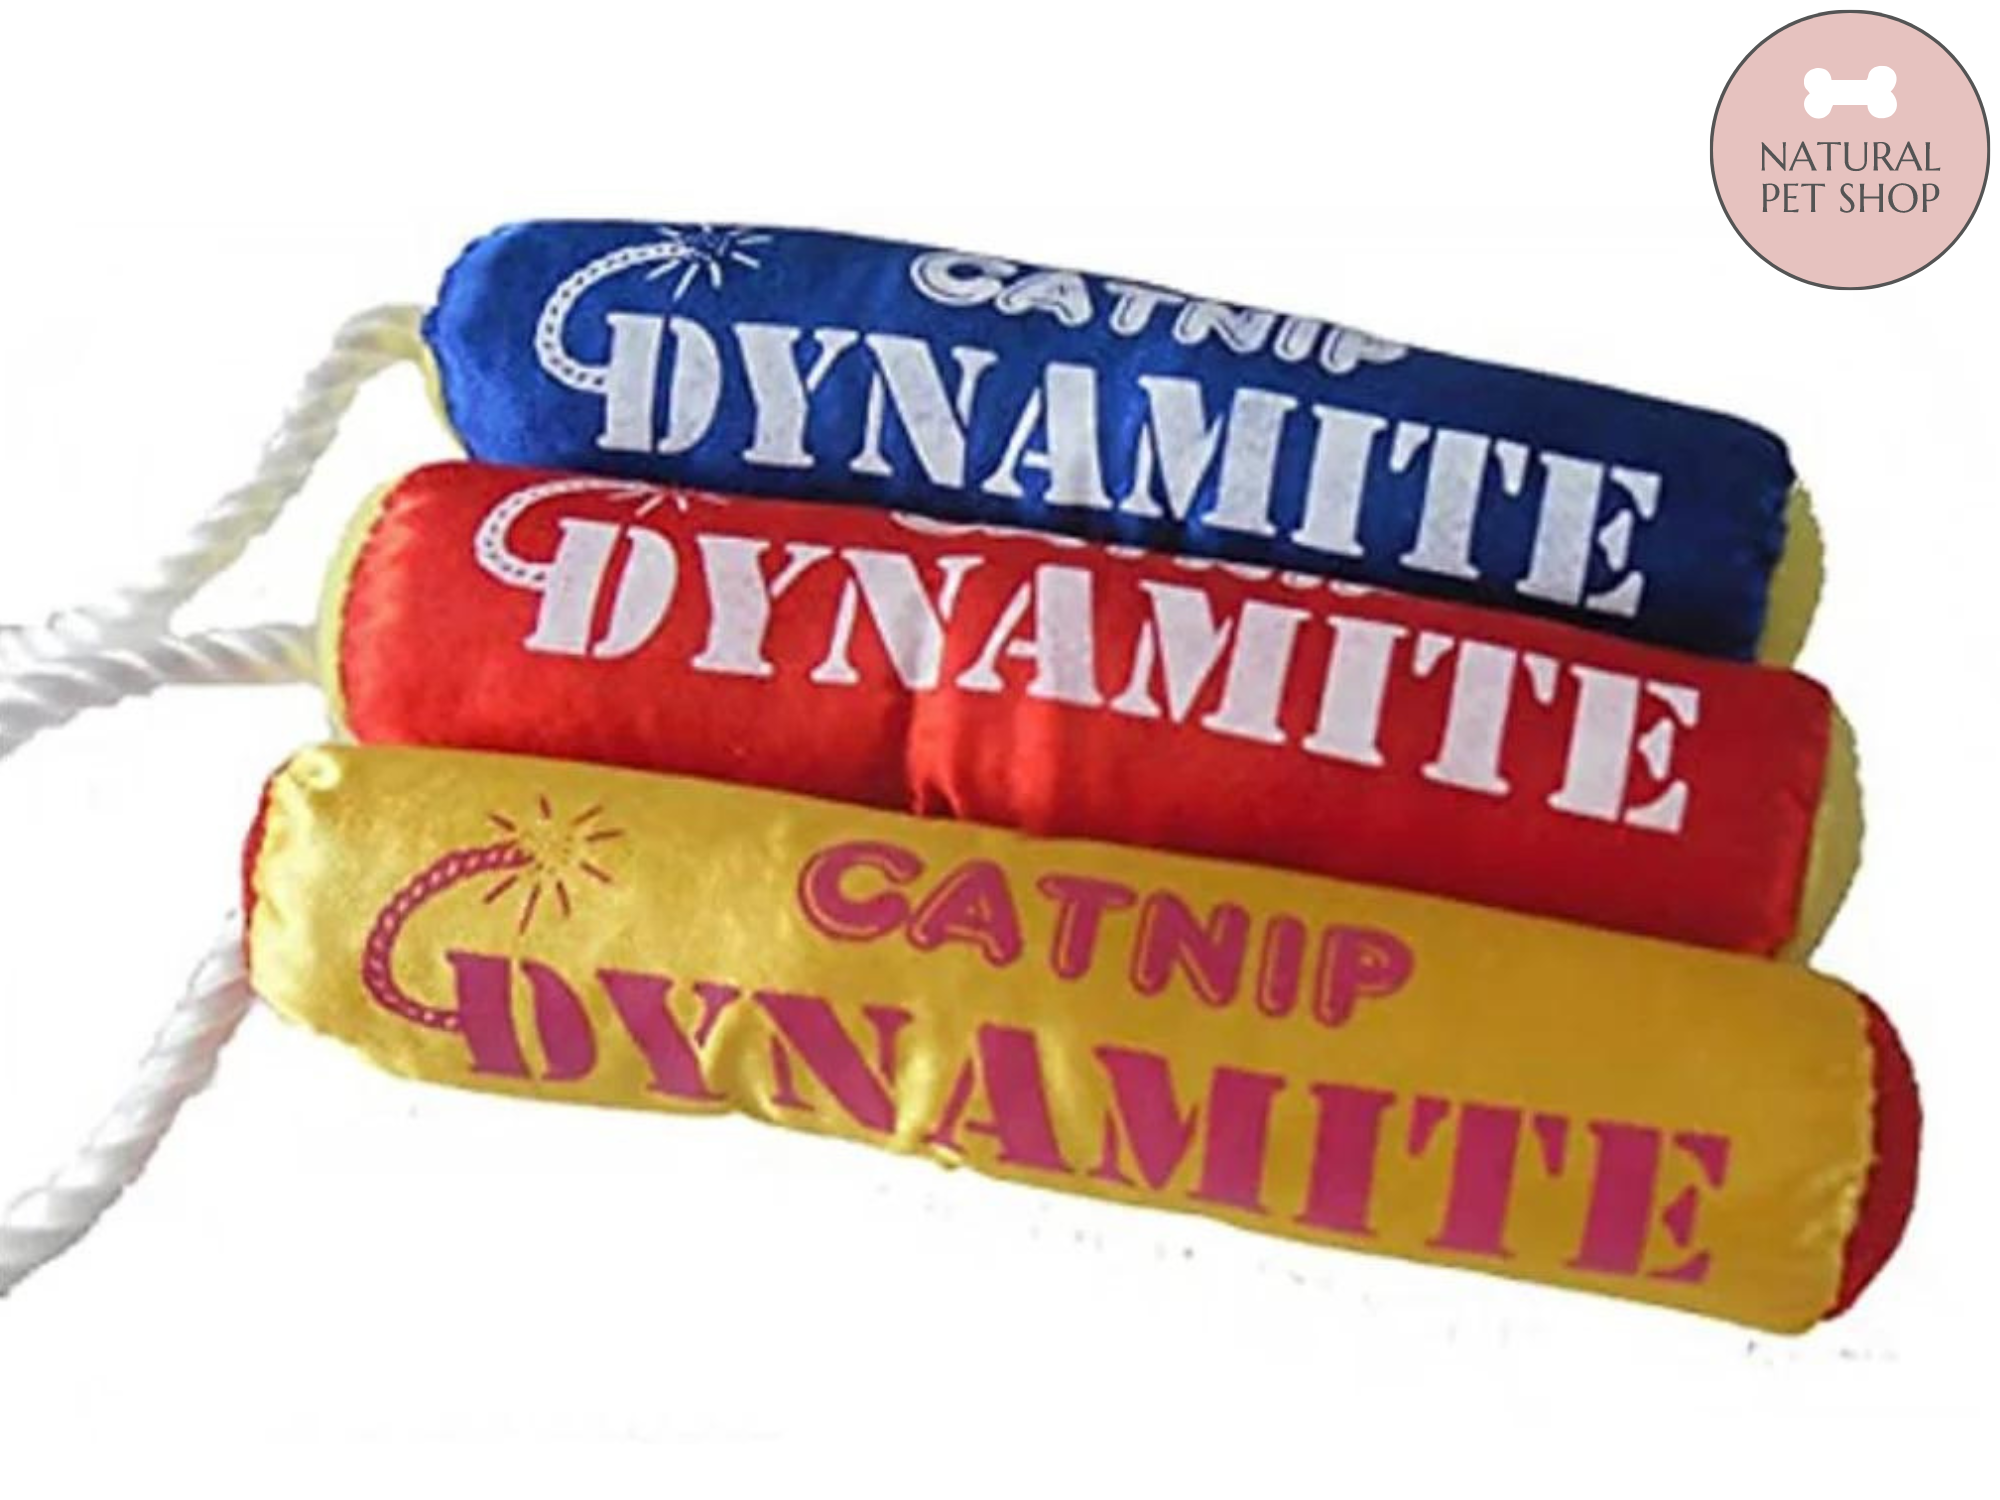 Catnip Dynamite Toy